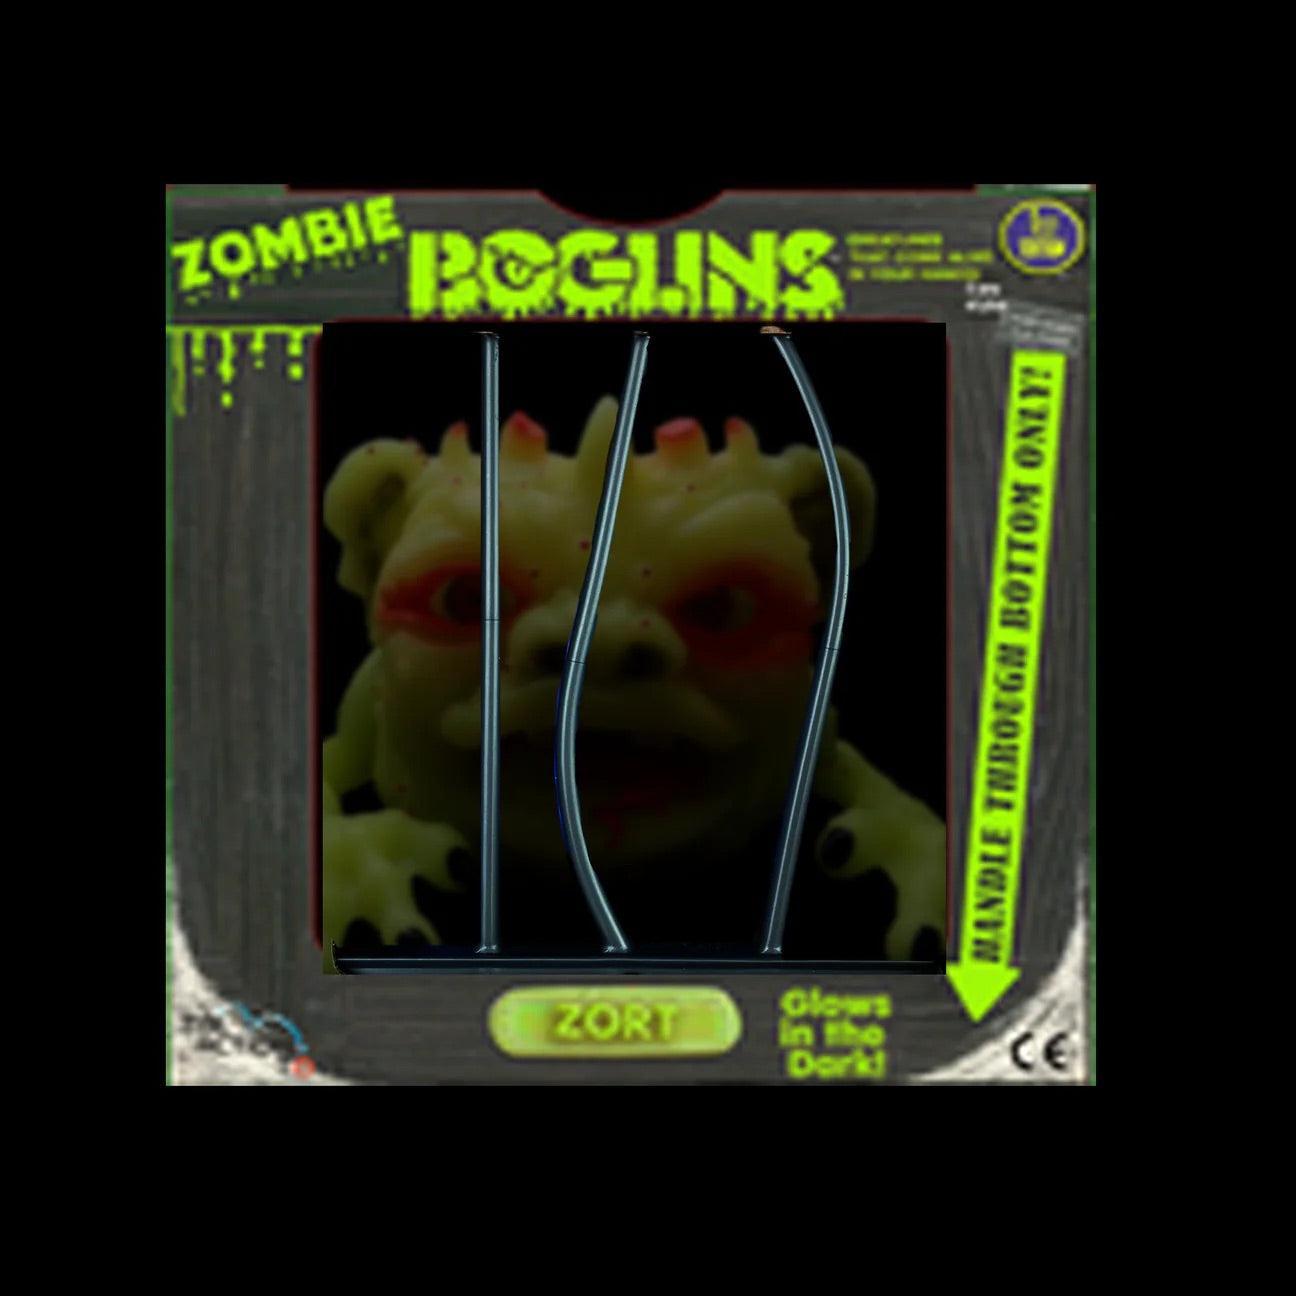 Boglins Zombie Zort in Cage